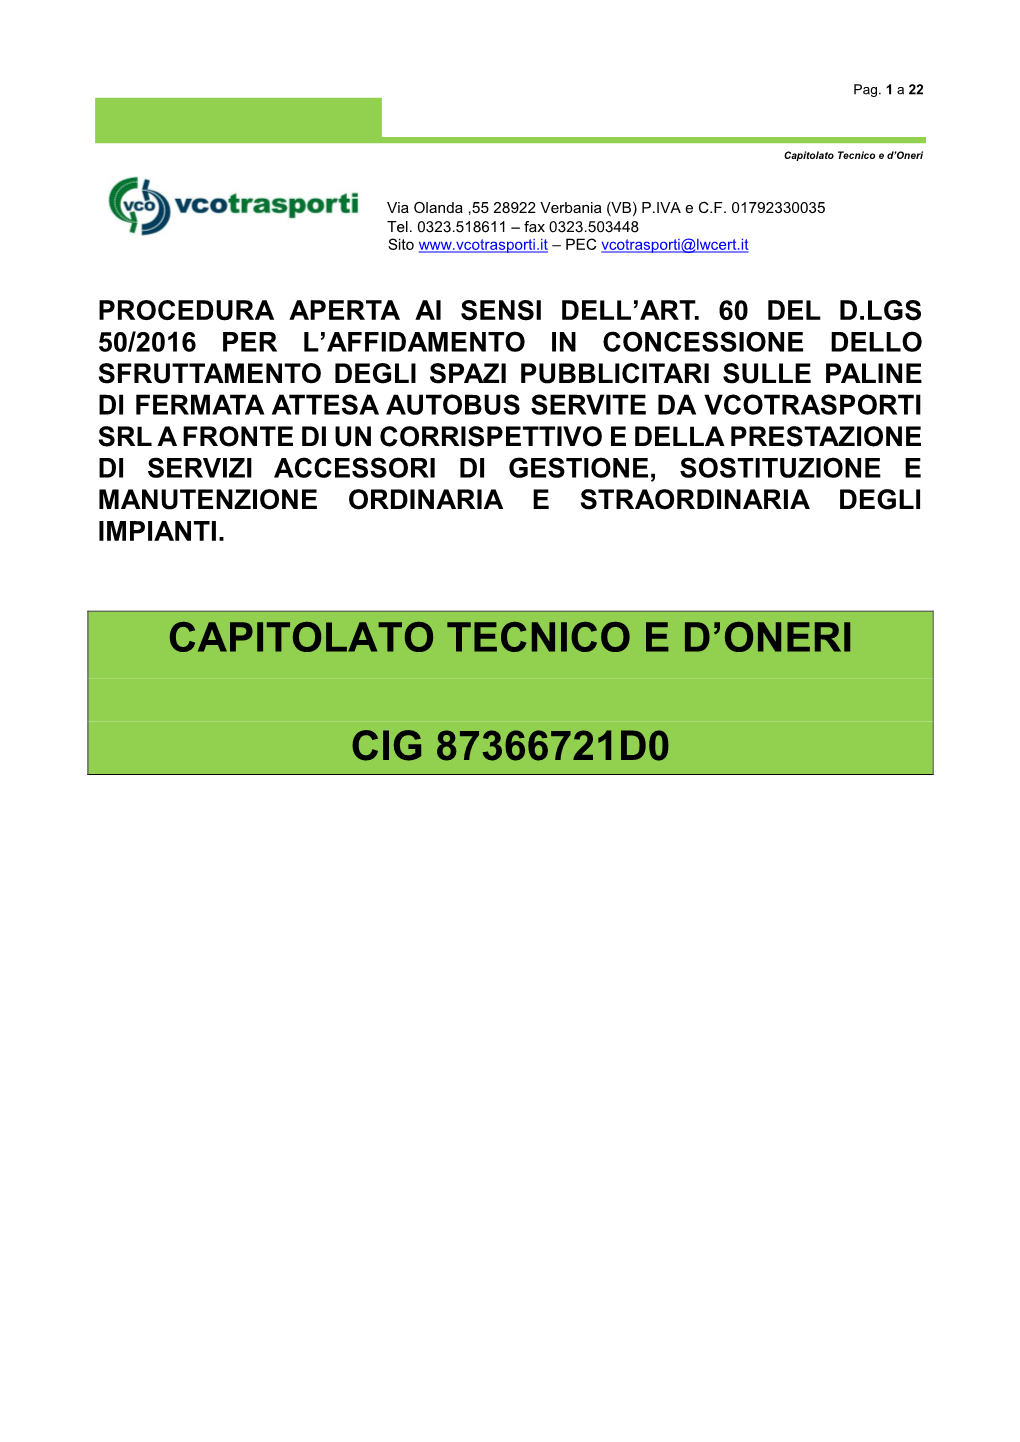 Capitolato Tecnico E D'oneri Cig 87366721D0